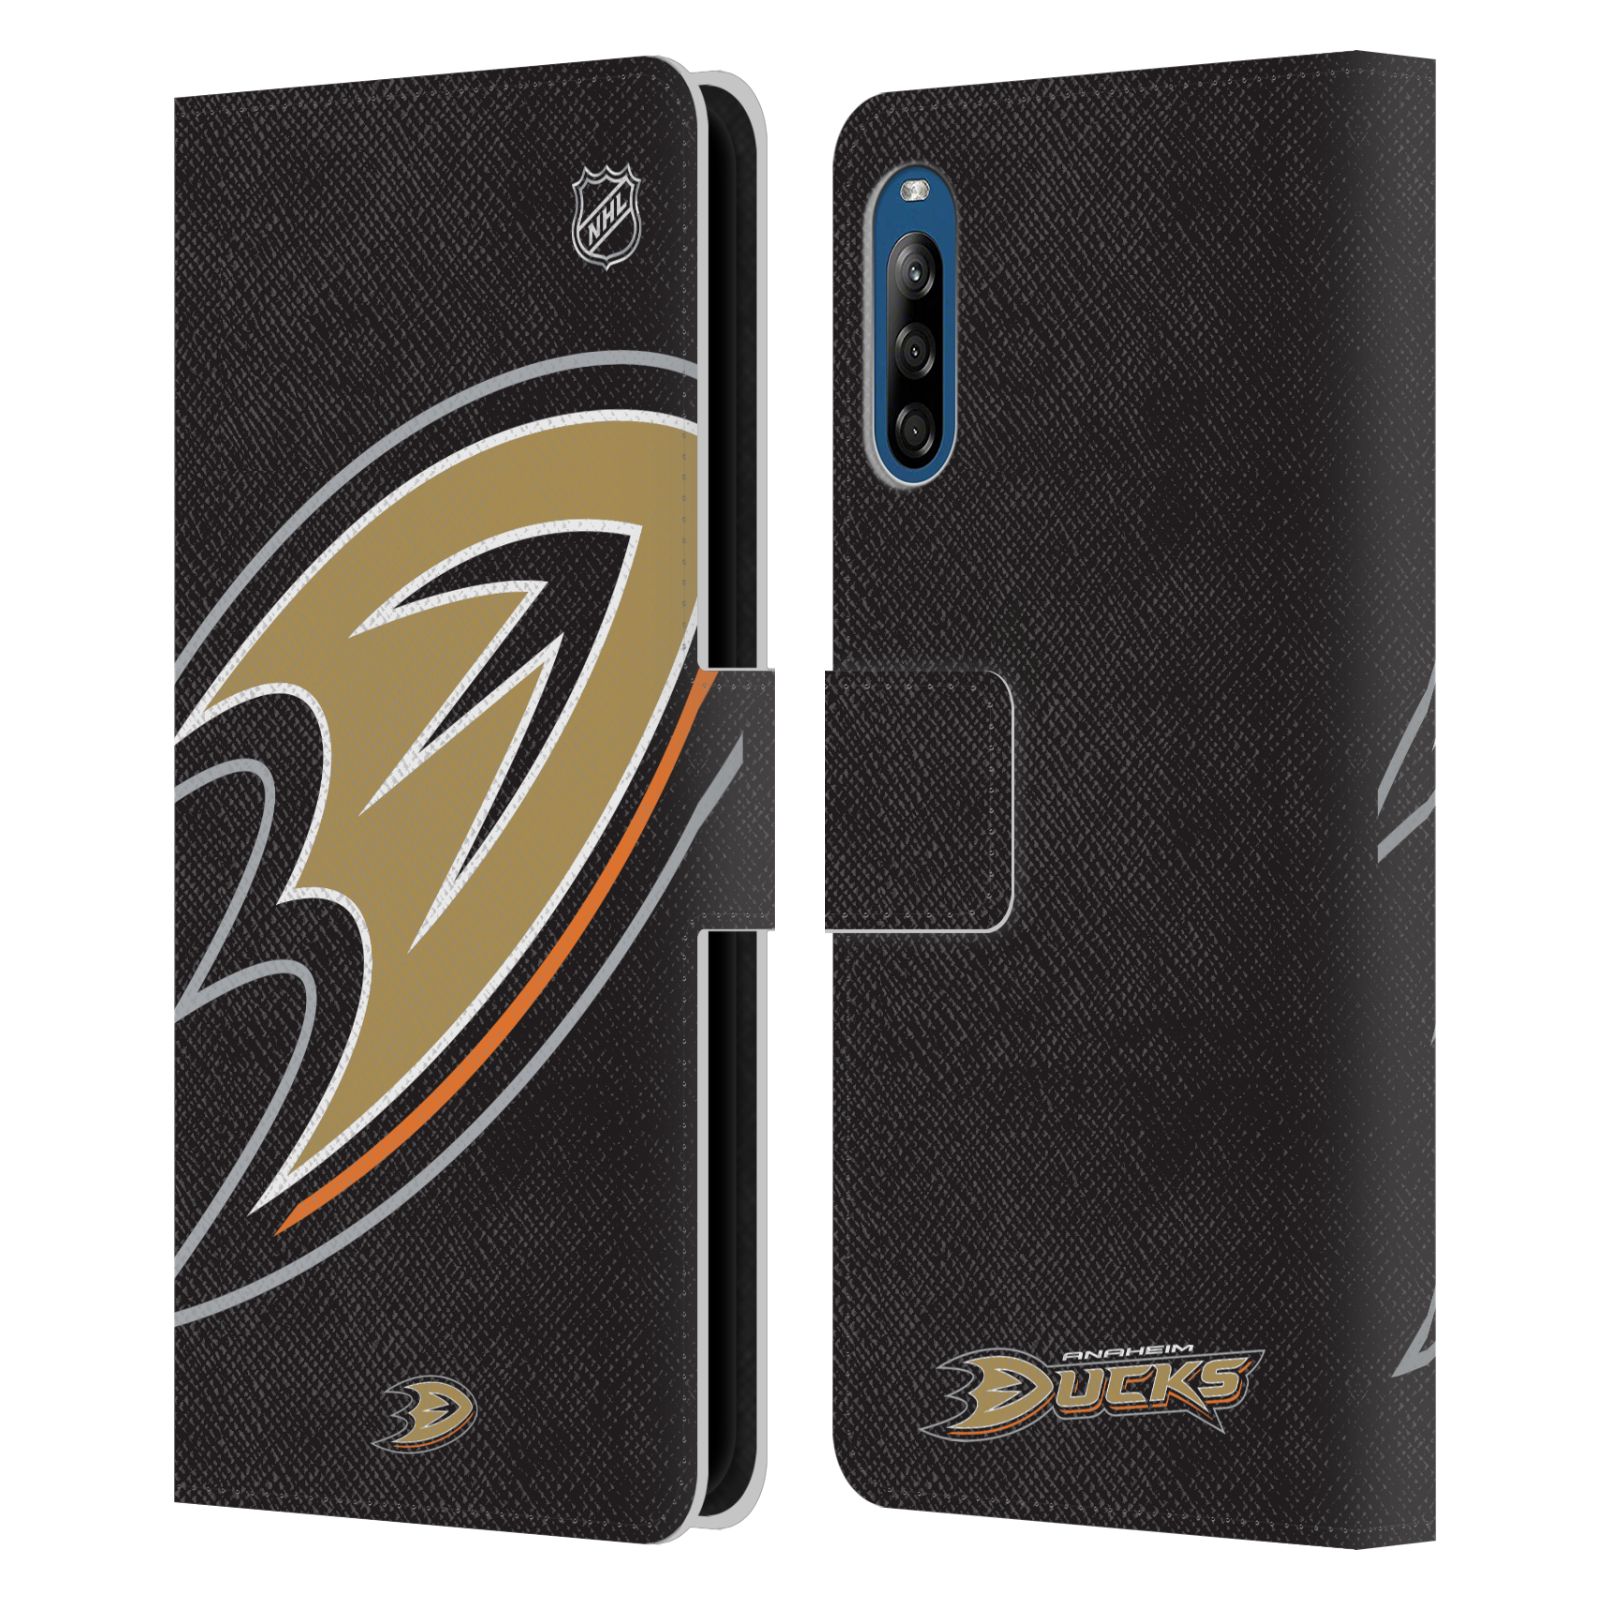 Pouzdro pro mobil Sony Xperia L4 - HEAD CASE - NHL - Anaheim Ducks - Velký znak